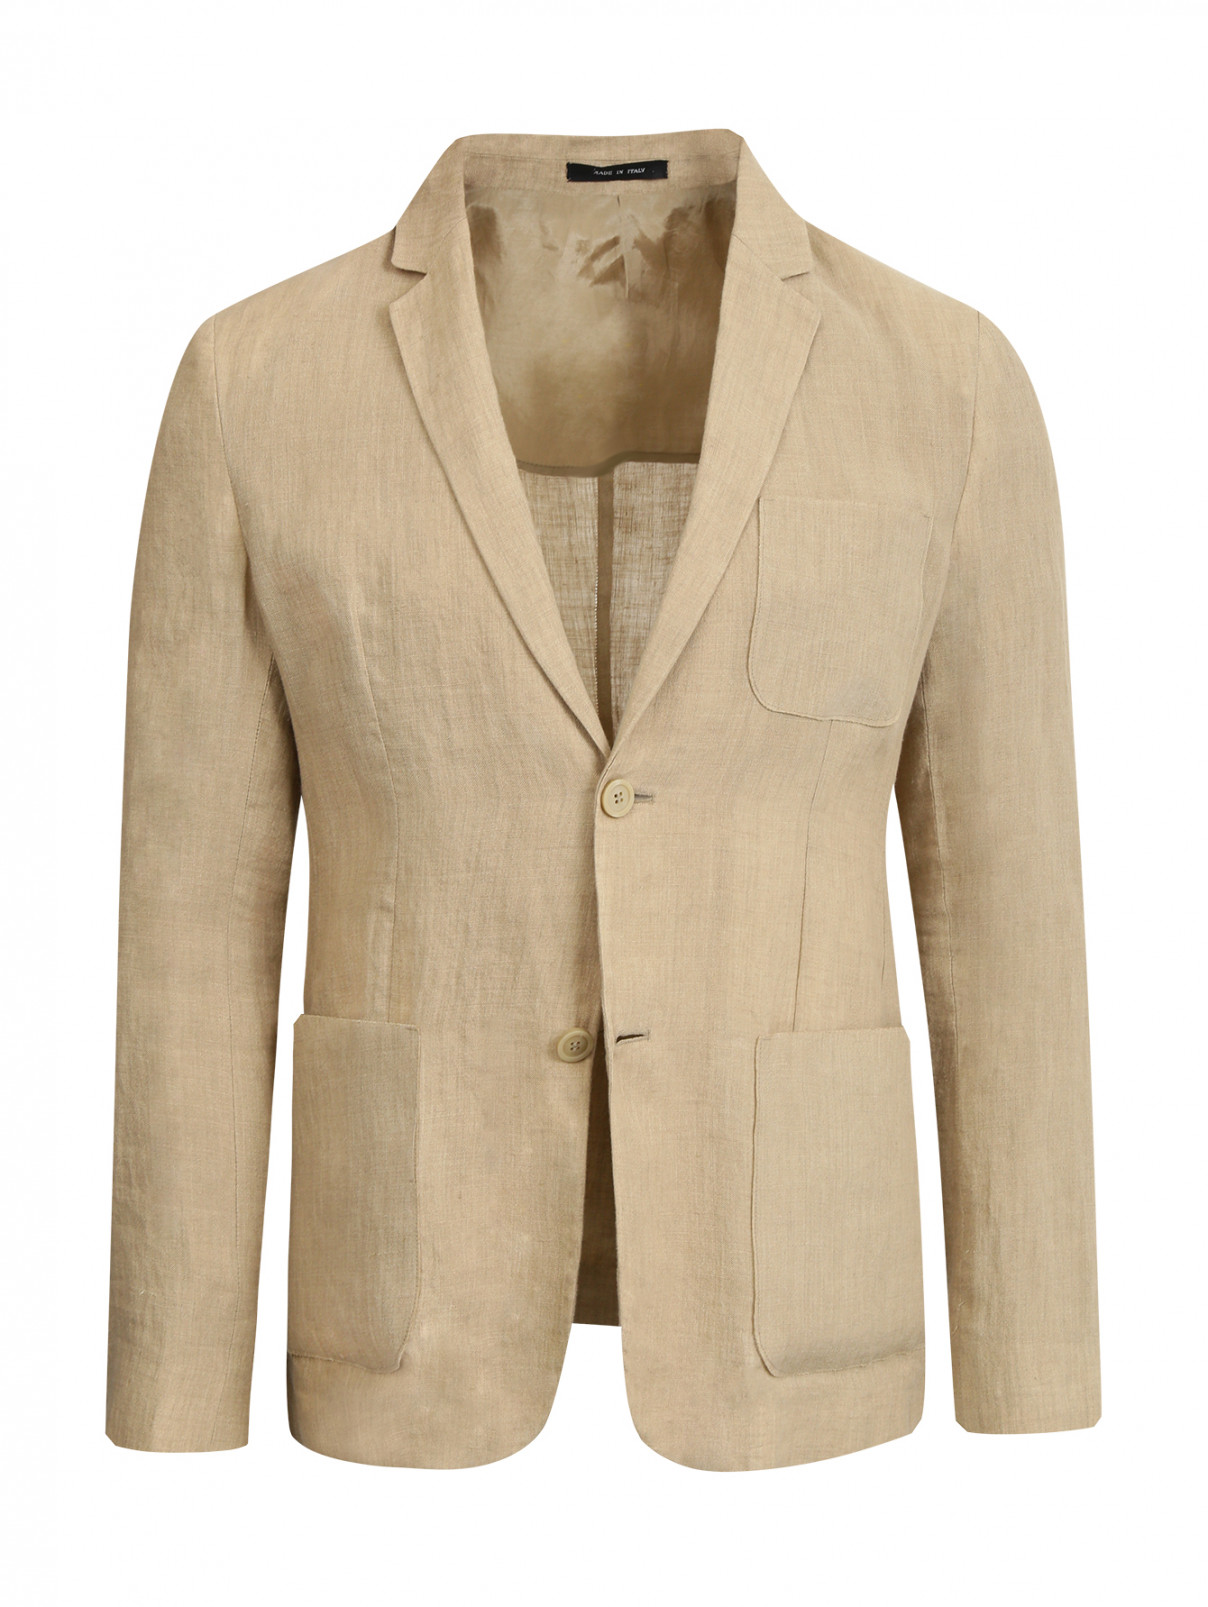 Пиджак из хлопка с накладными карманами Emporio Armani  –  Общий вид  – Цвет:  Бежевый